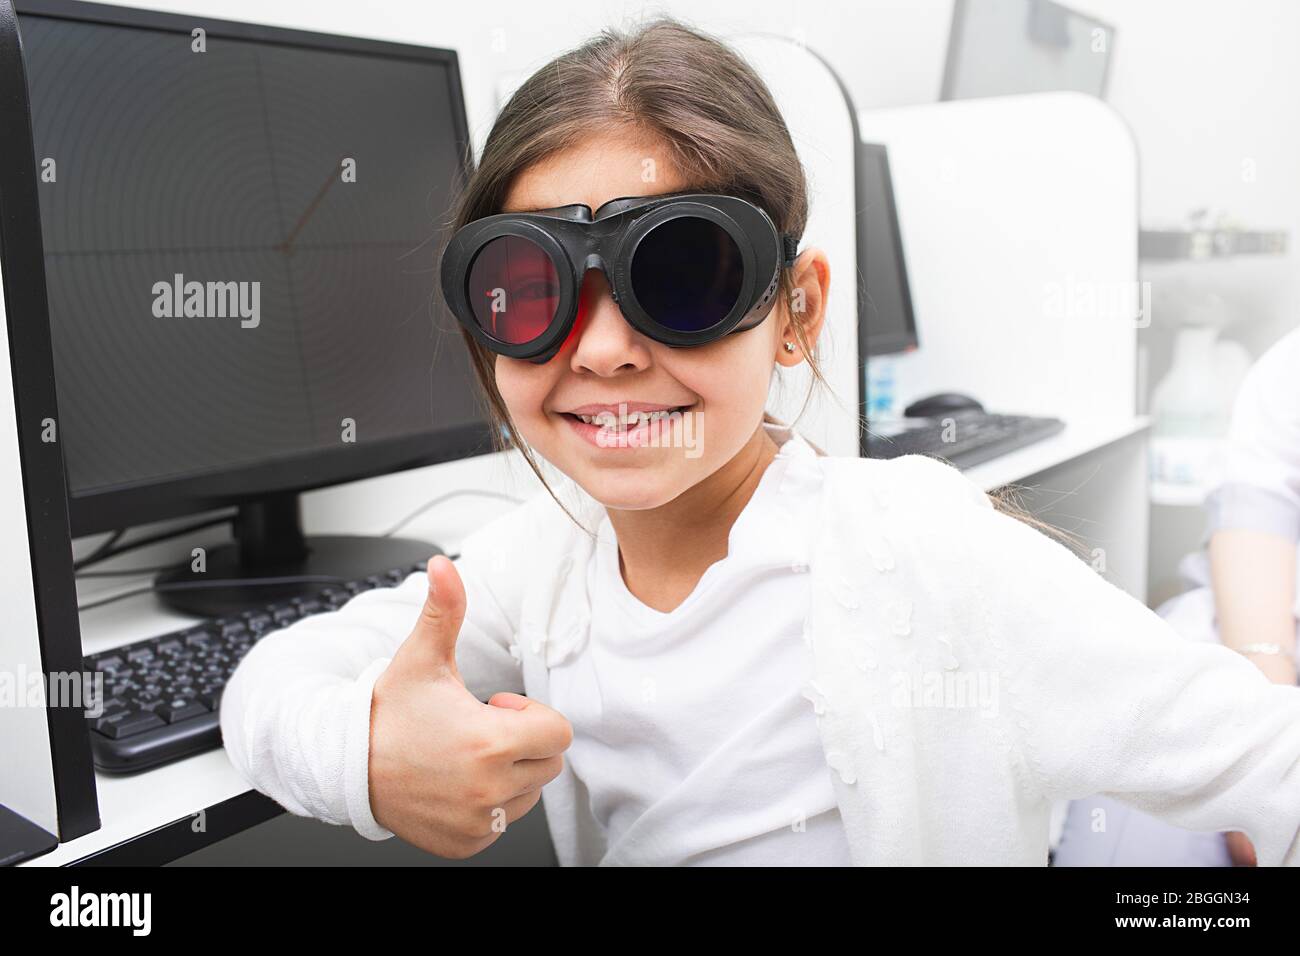 La petite fille aime recevoir un traitement informatique pour ses yeux. Traitement du strabismus. Traitement par amblyopie. Banque D'Images